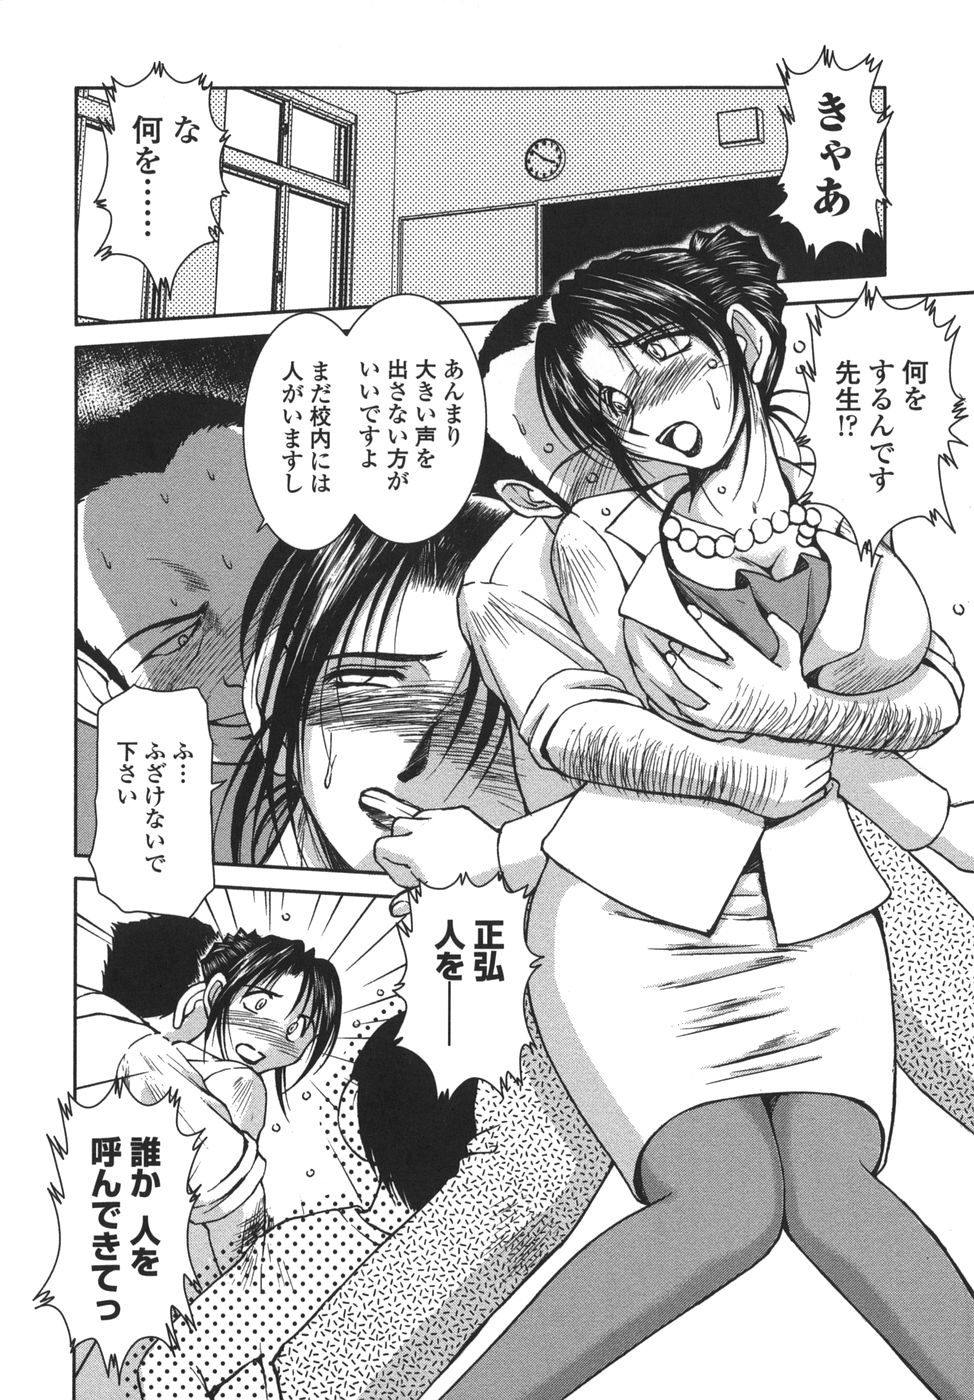 [Shuusaku Chiba] Sunaba no Aruji page 10 full